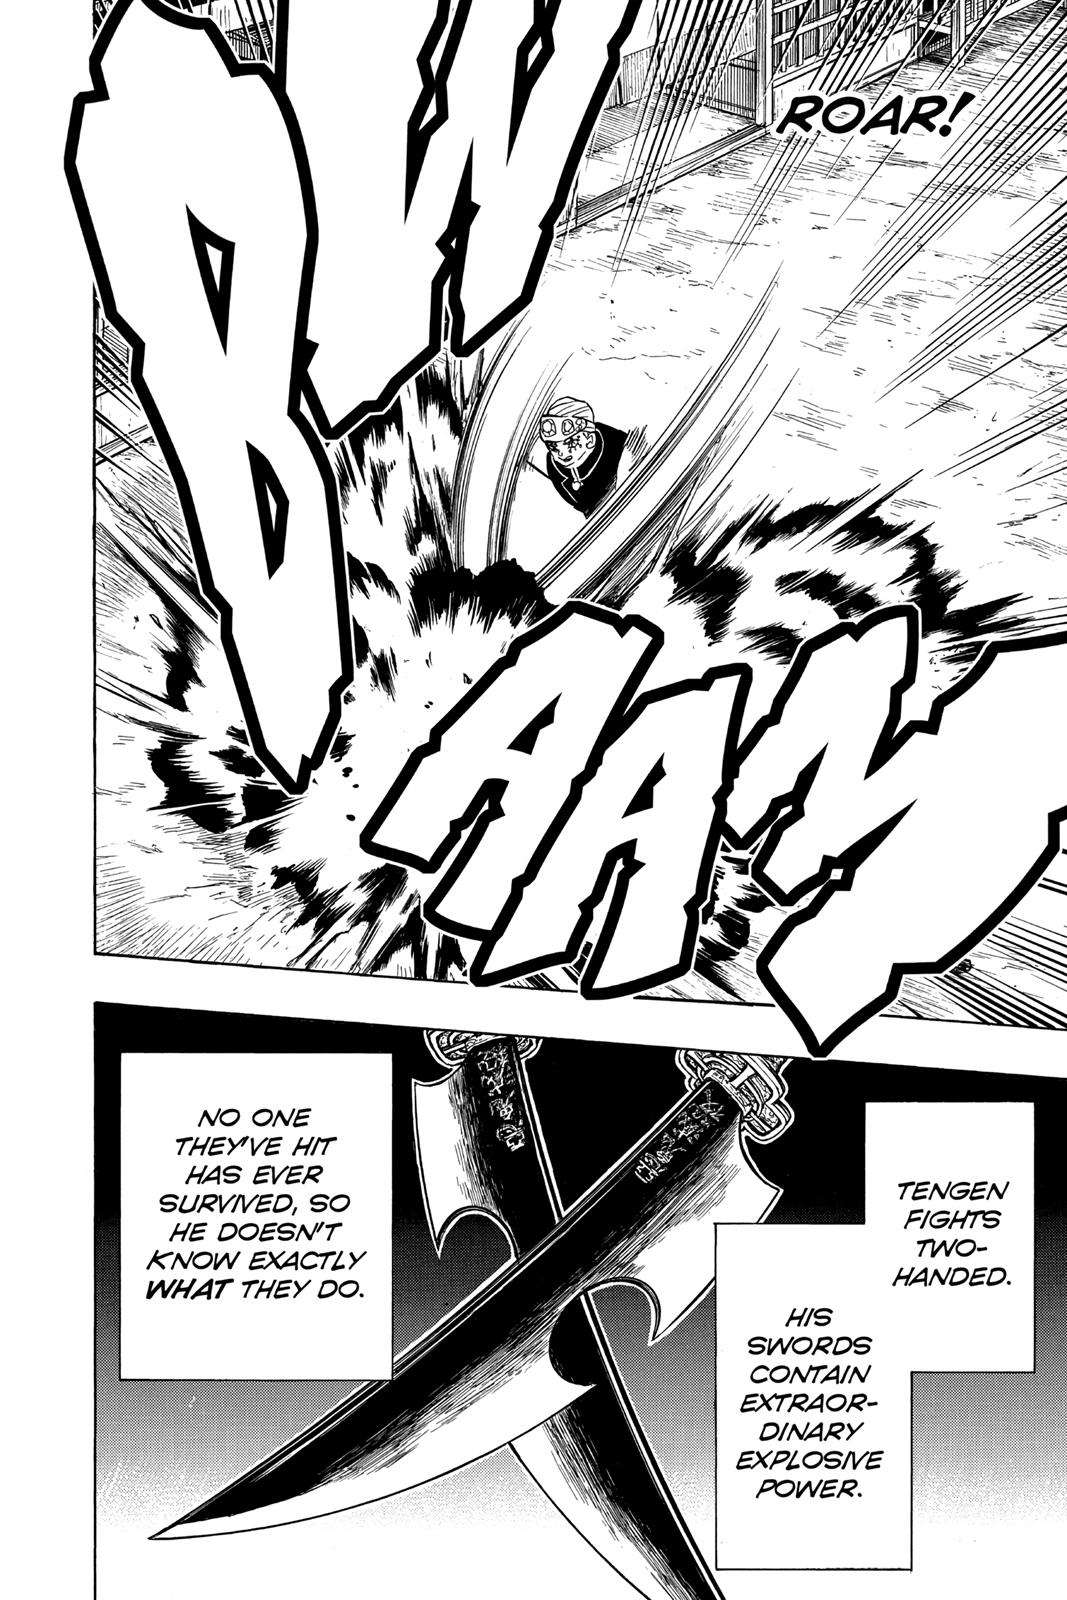 Demon Slayer Manga Manga Chapter - 77 - image 6